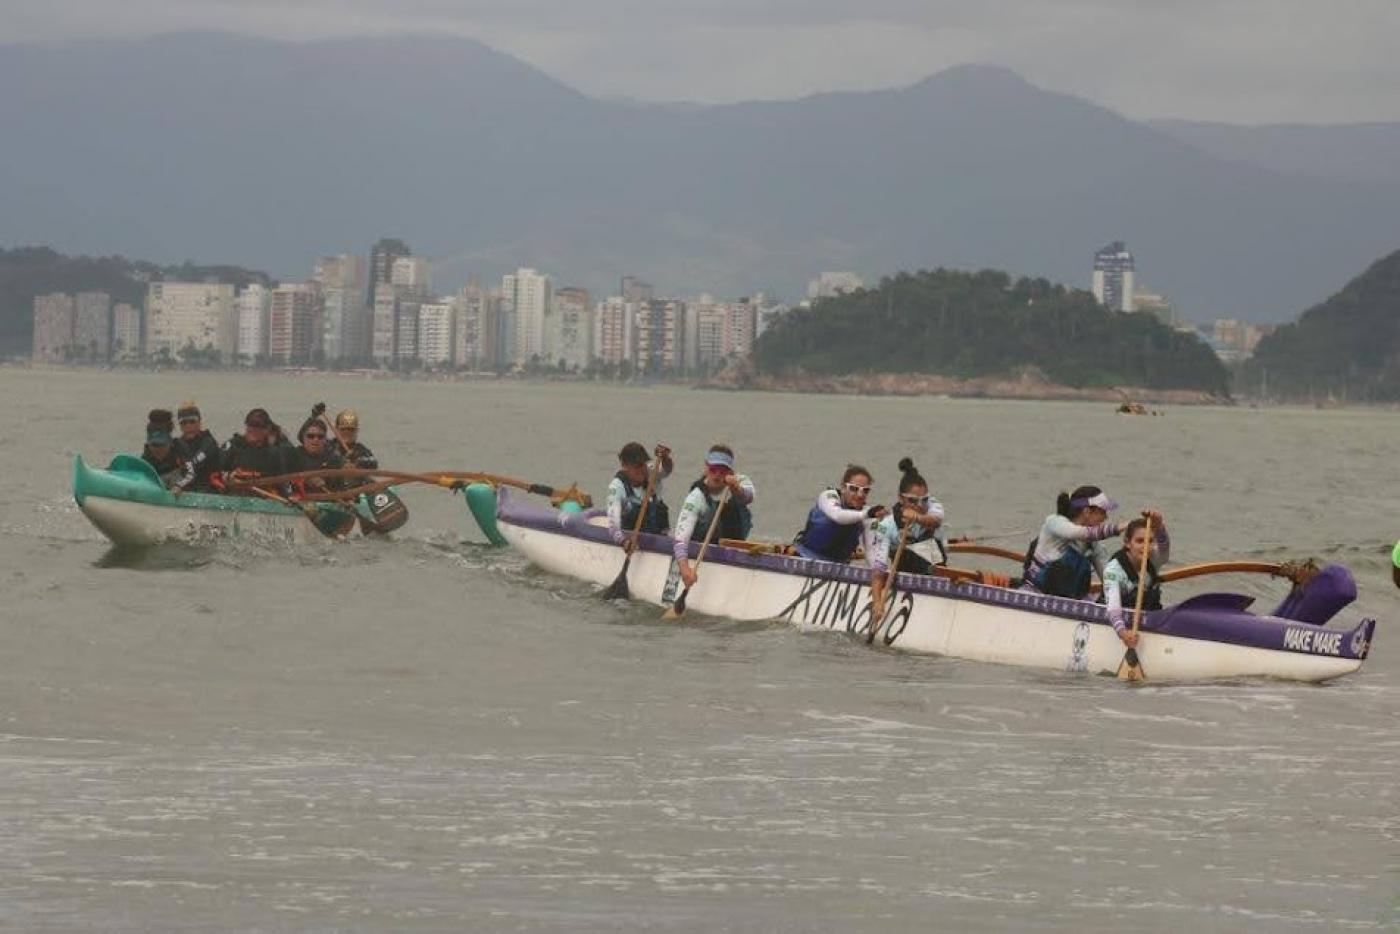 duas canoas dirigidas por mulheres estão no mar. A que está atrás tenta alcançar a que está à frente. #paratodosverem